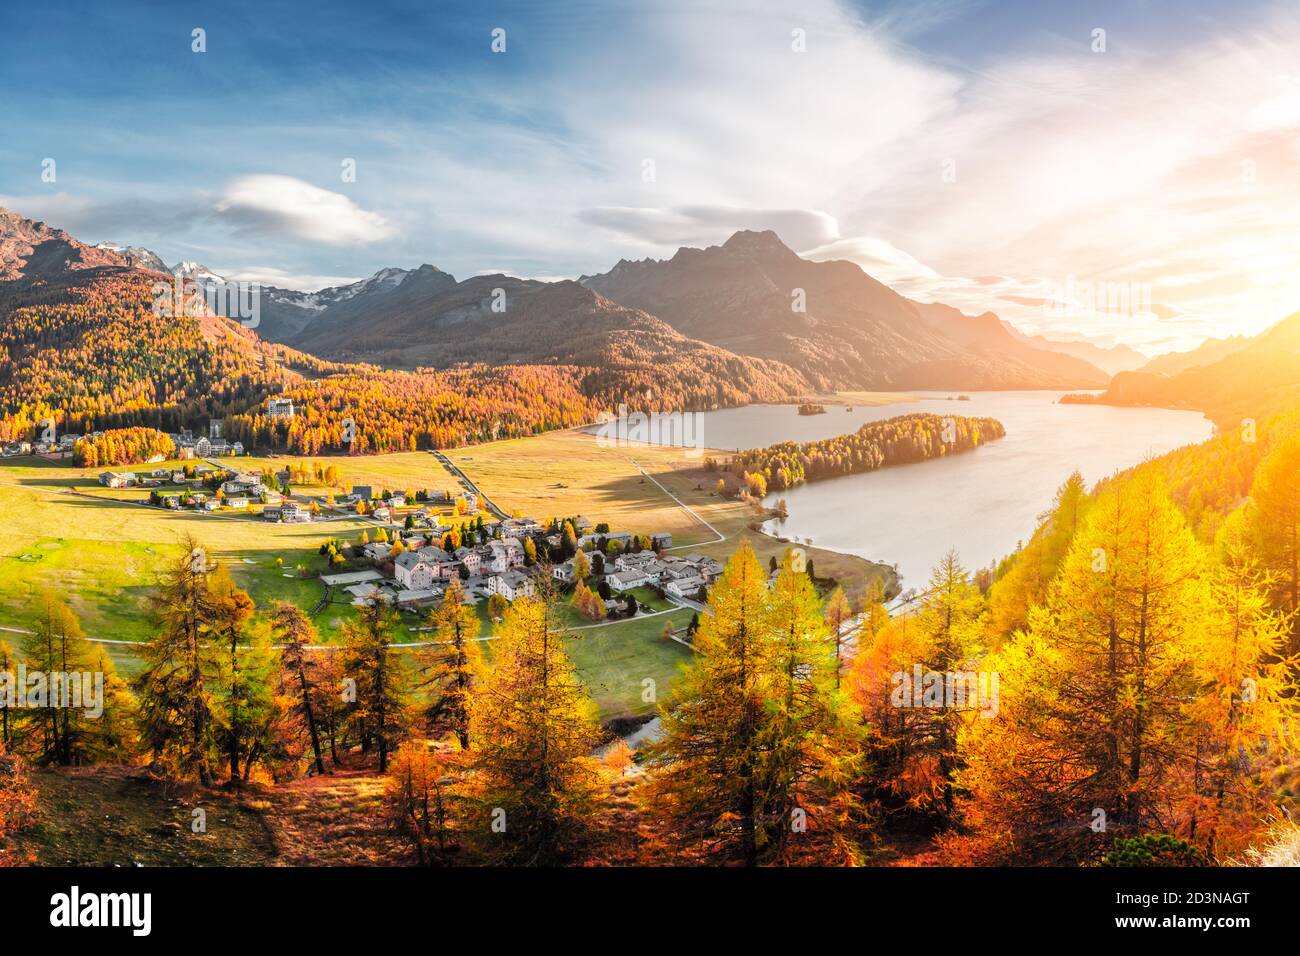 Panorama von Sils Dorf und Sils See (Silsersee) in Schweizer Alpen. Farbenfroher Wald mit oranger Lärche. Schweiz, Region Maloja, Oberengadin. Landschaftsfotografie Stockfoto